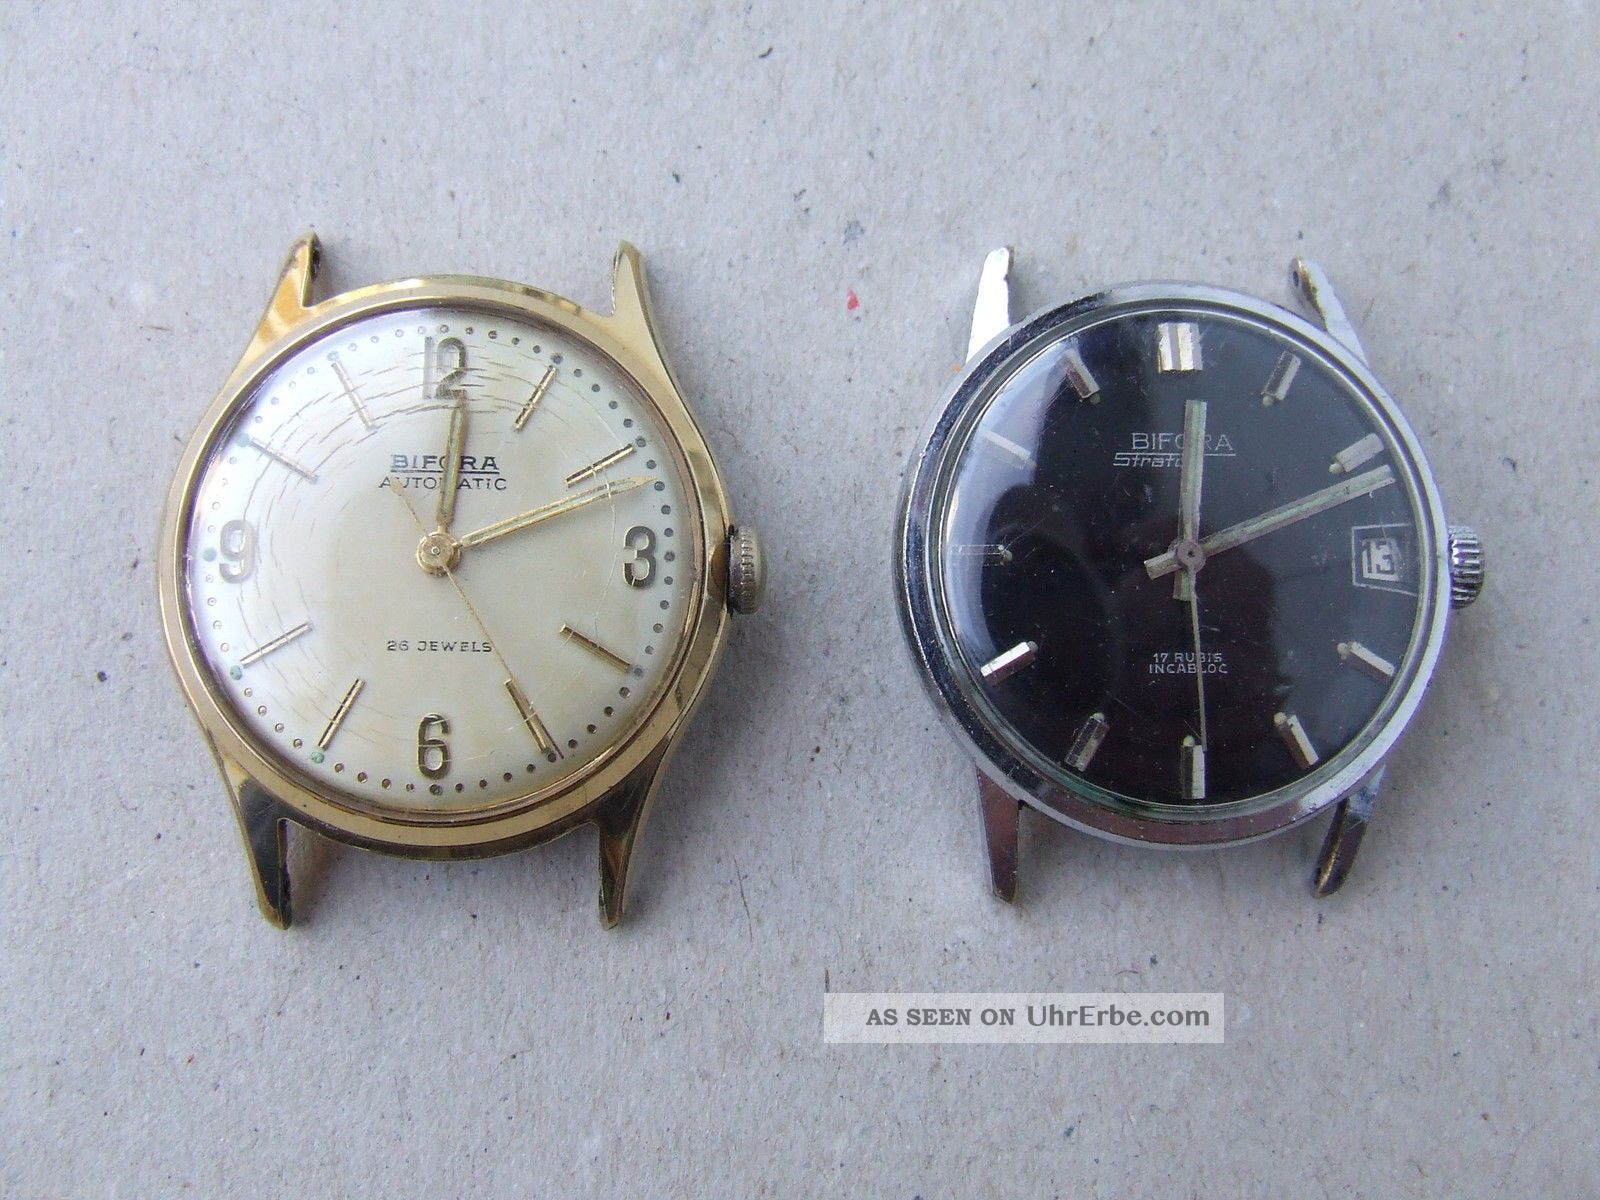 Zwei Bifora Armbanduhren - 1 X Handaufzug U.  1 X Automatik - Made In Germany Armbanduhren Bild